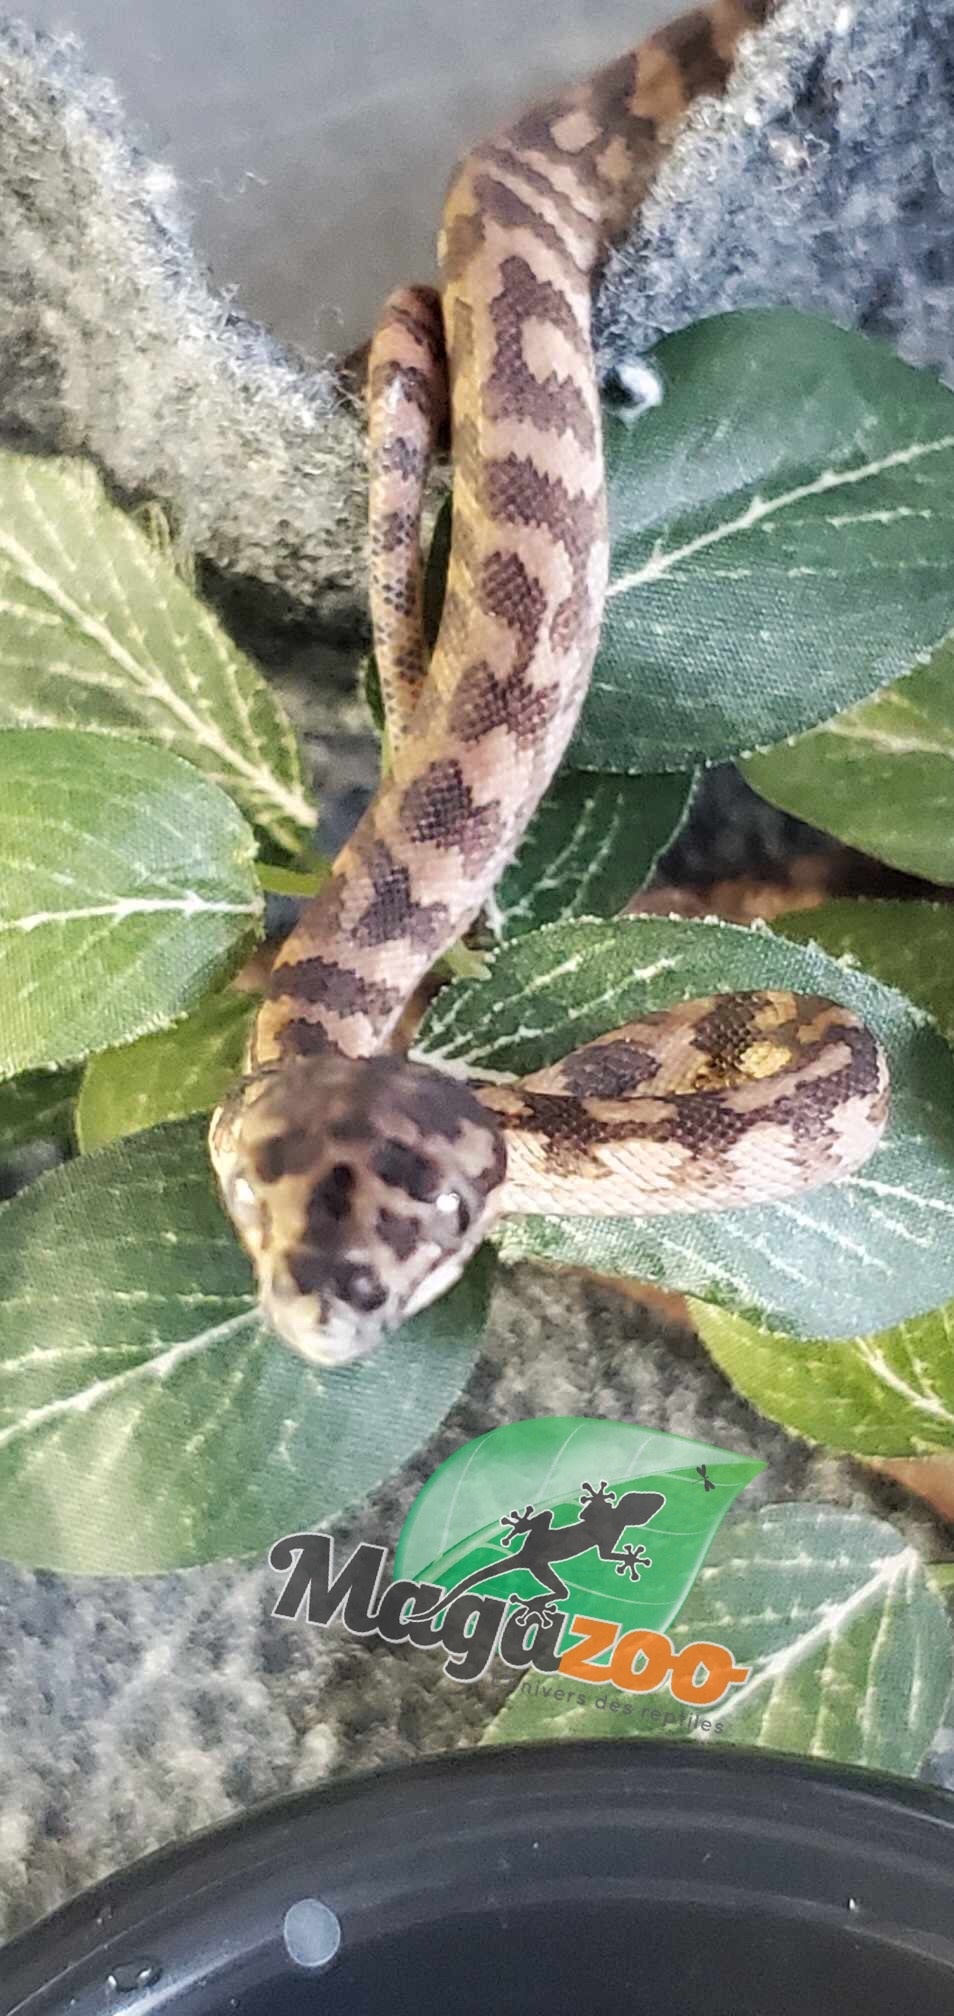 Magazoo Python tapis Irian Jaya Bébé femelle  (66% poss. het.Ganite, 66% poss. het. Albino)